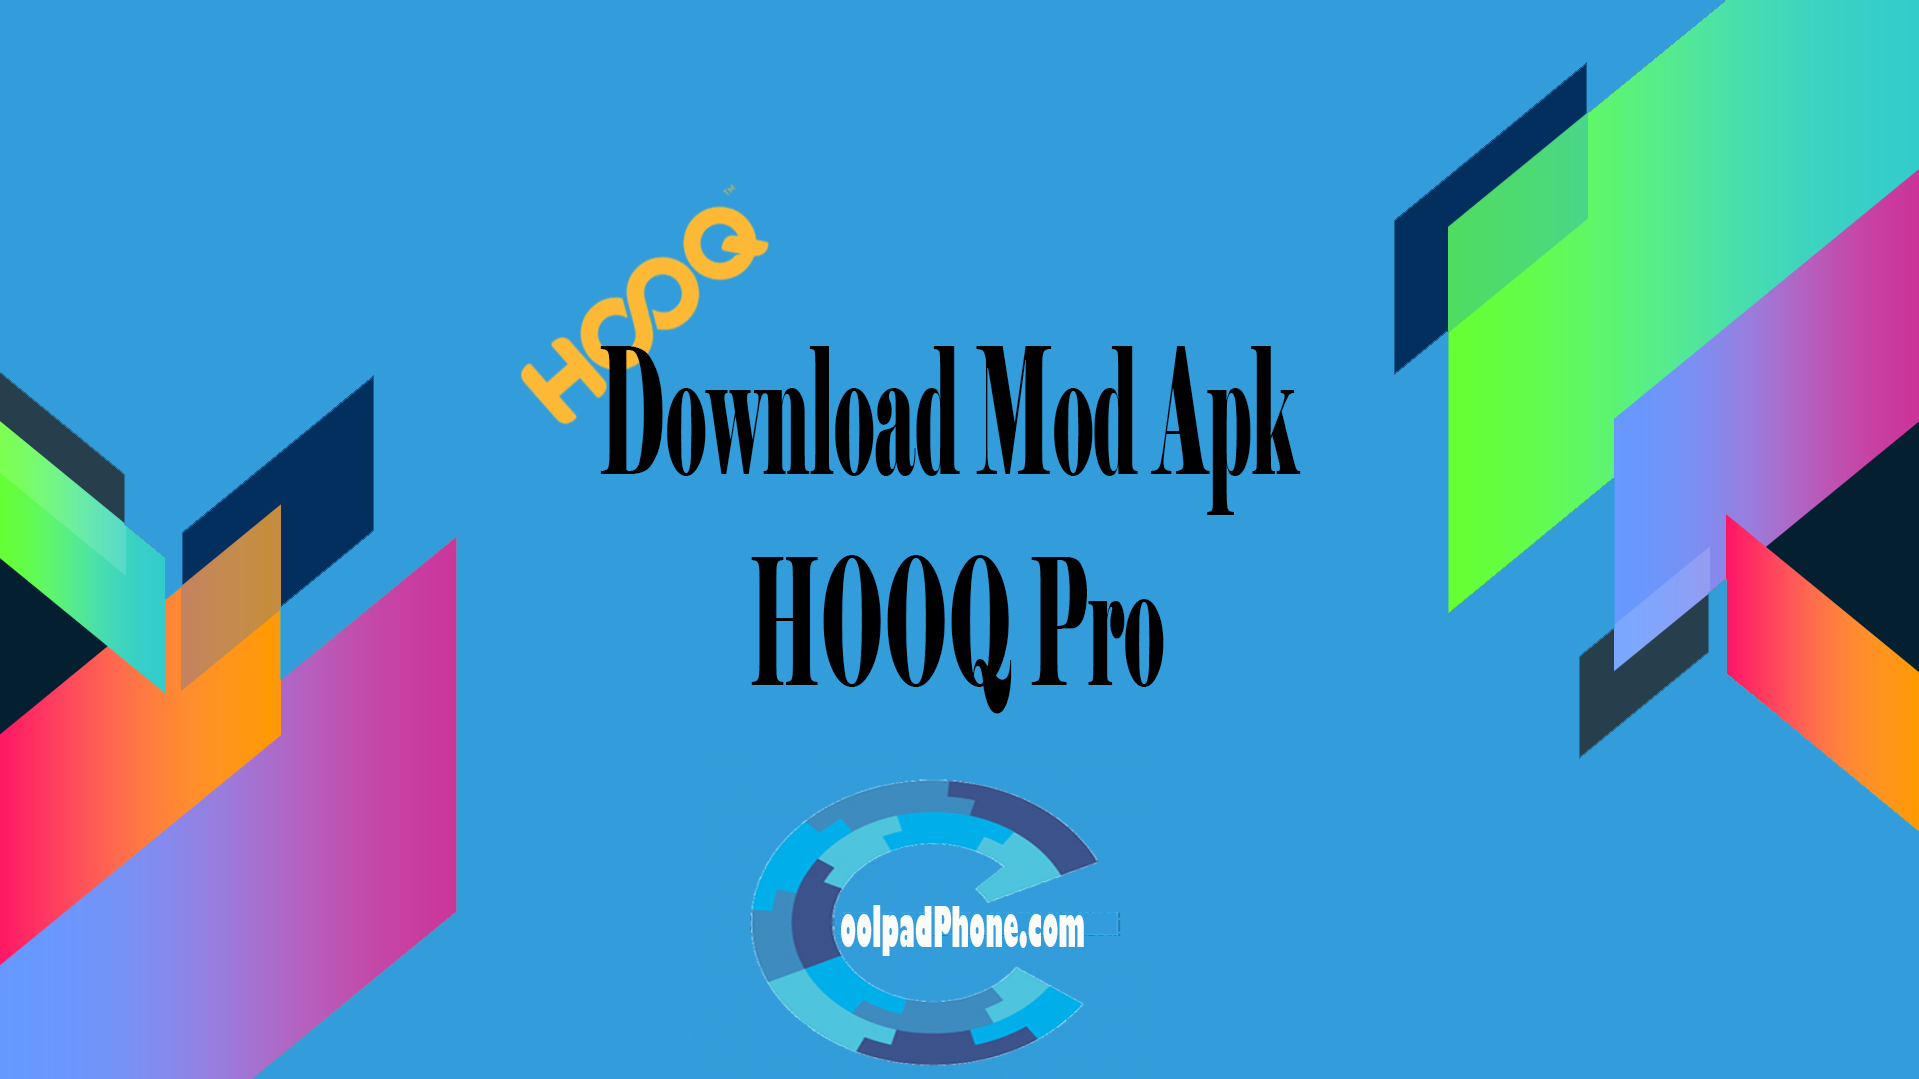 Download Mod Apk HOOQ Pro